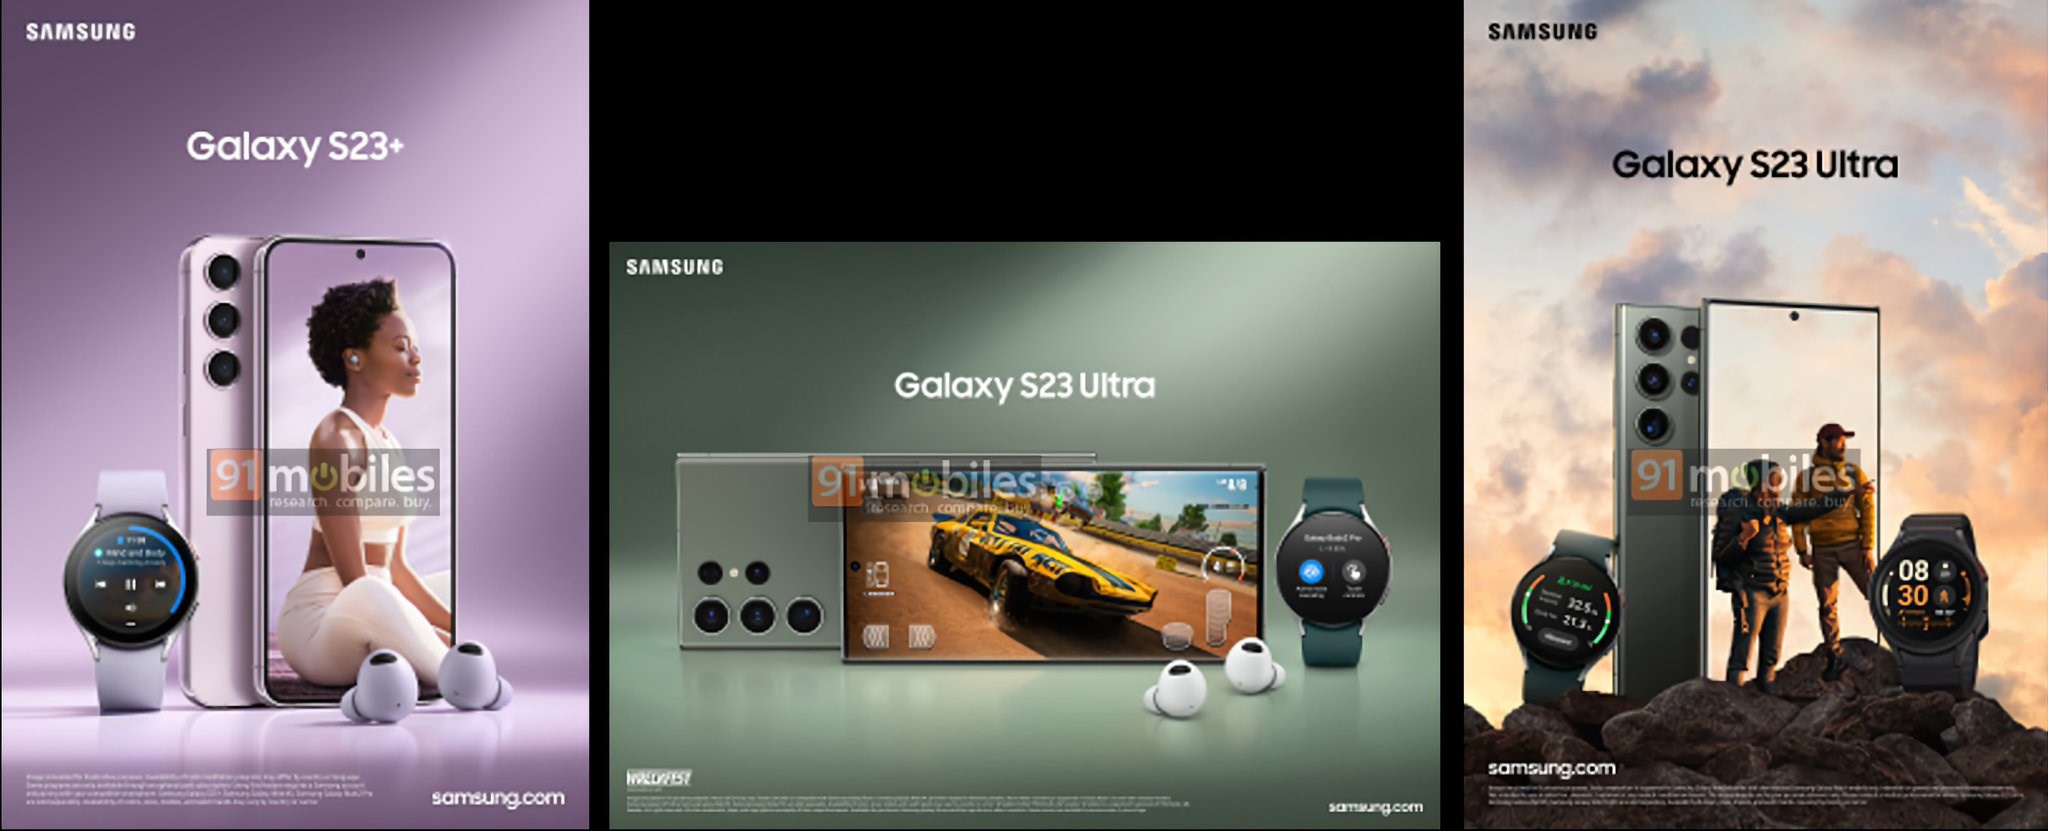 Galaxy S23 Ultra ekranı iPhone 14 Pro Max ile rekabet edemeyecek